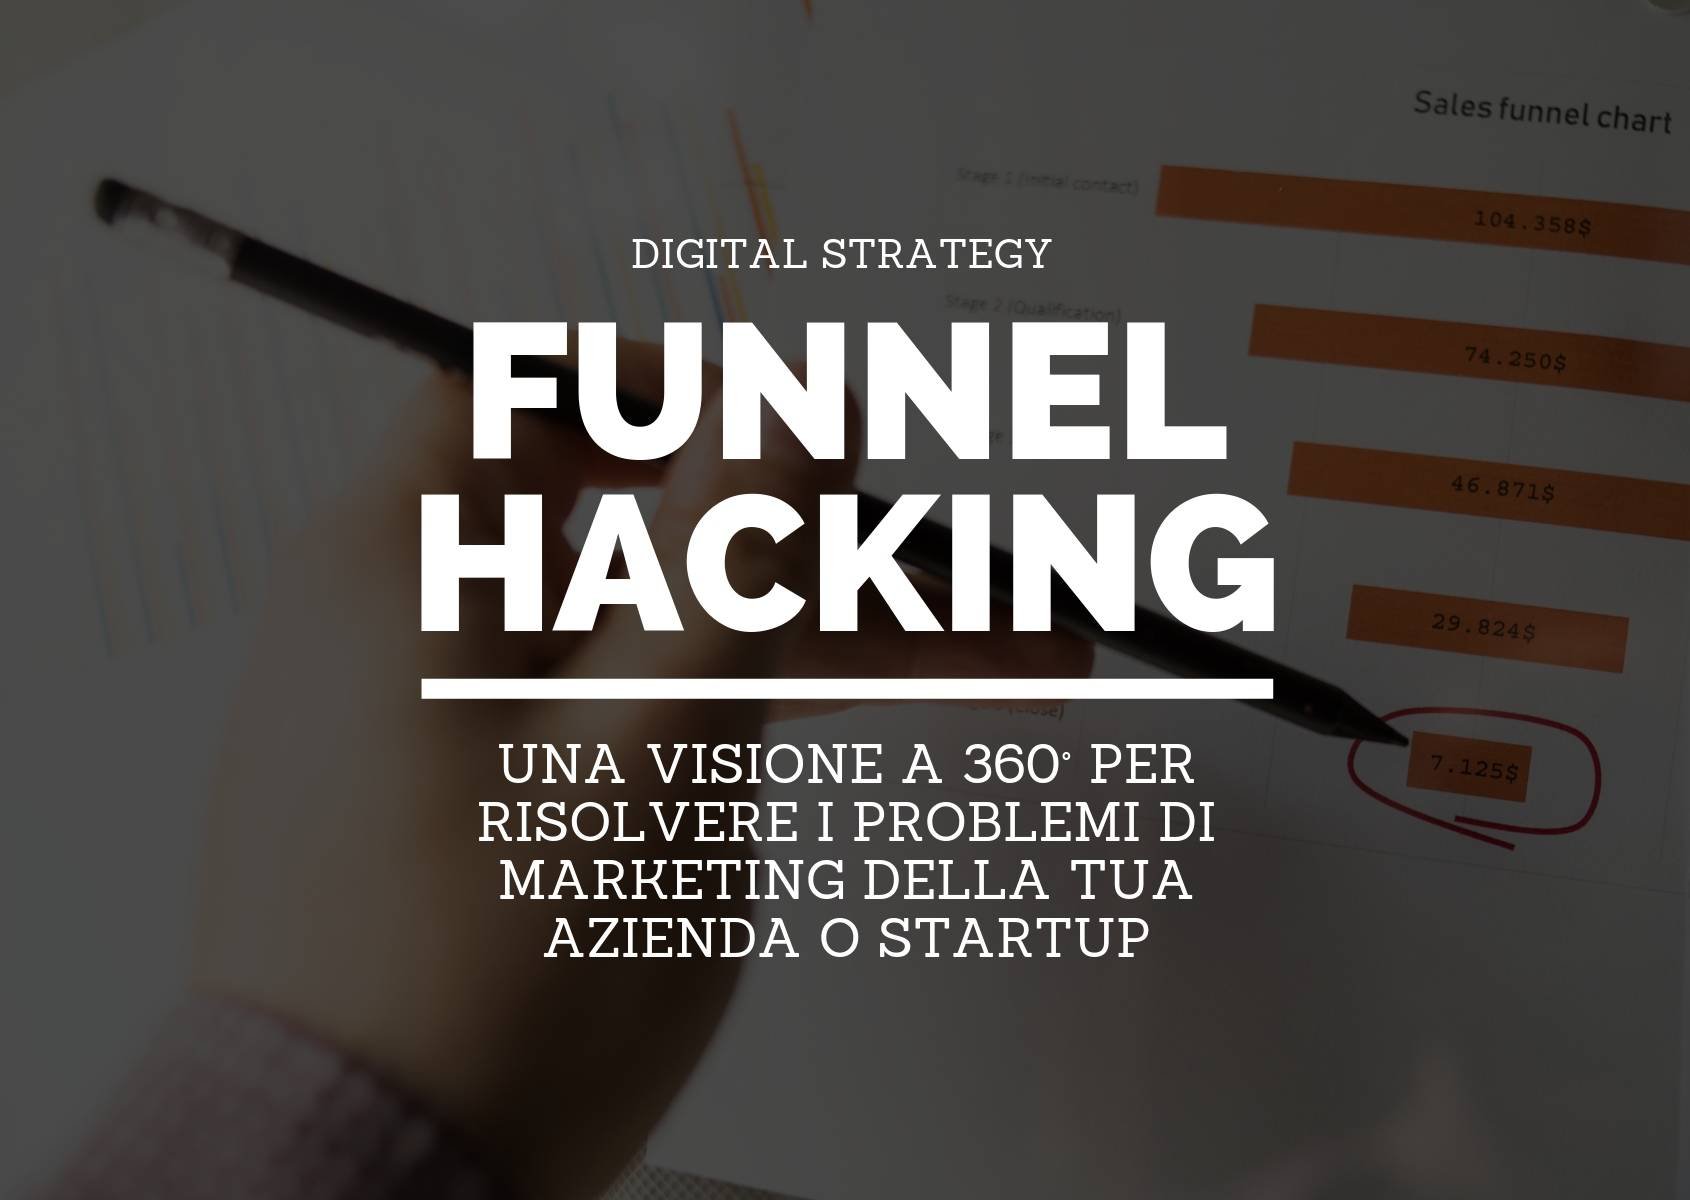 Funnel hacking: una visione a 360° per risolvere i problemi di marketing della tua azienda o startup